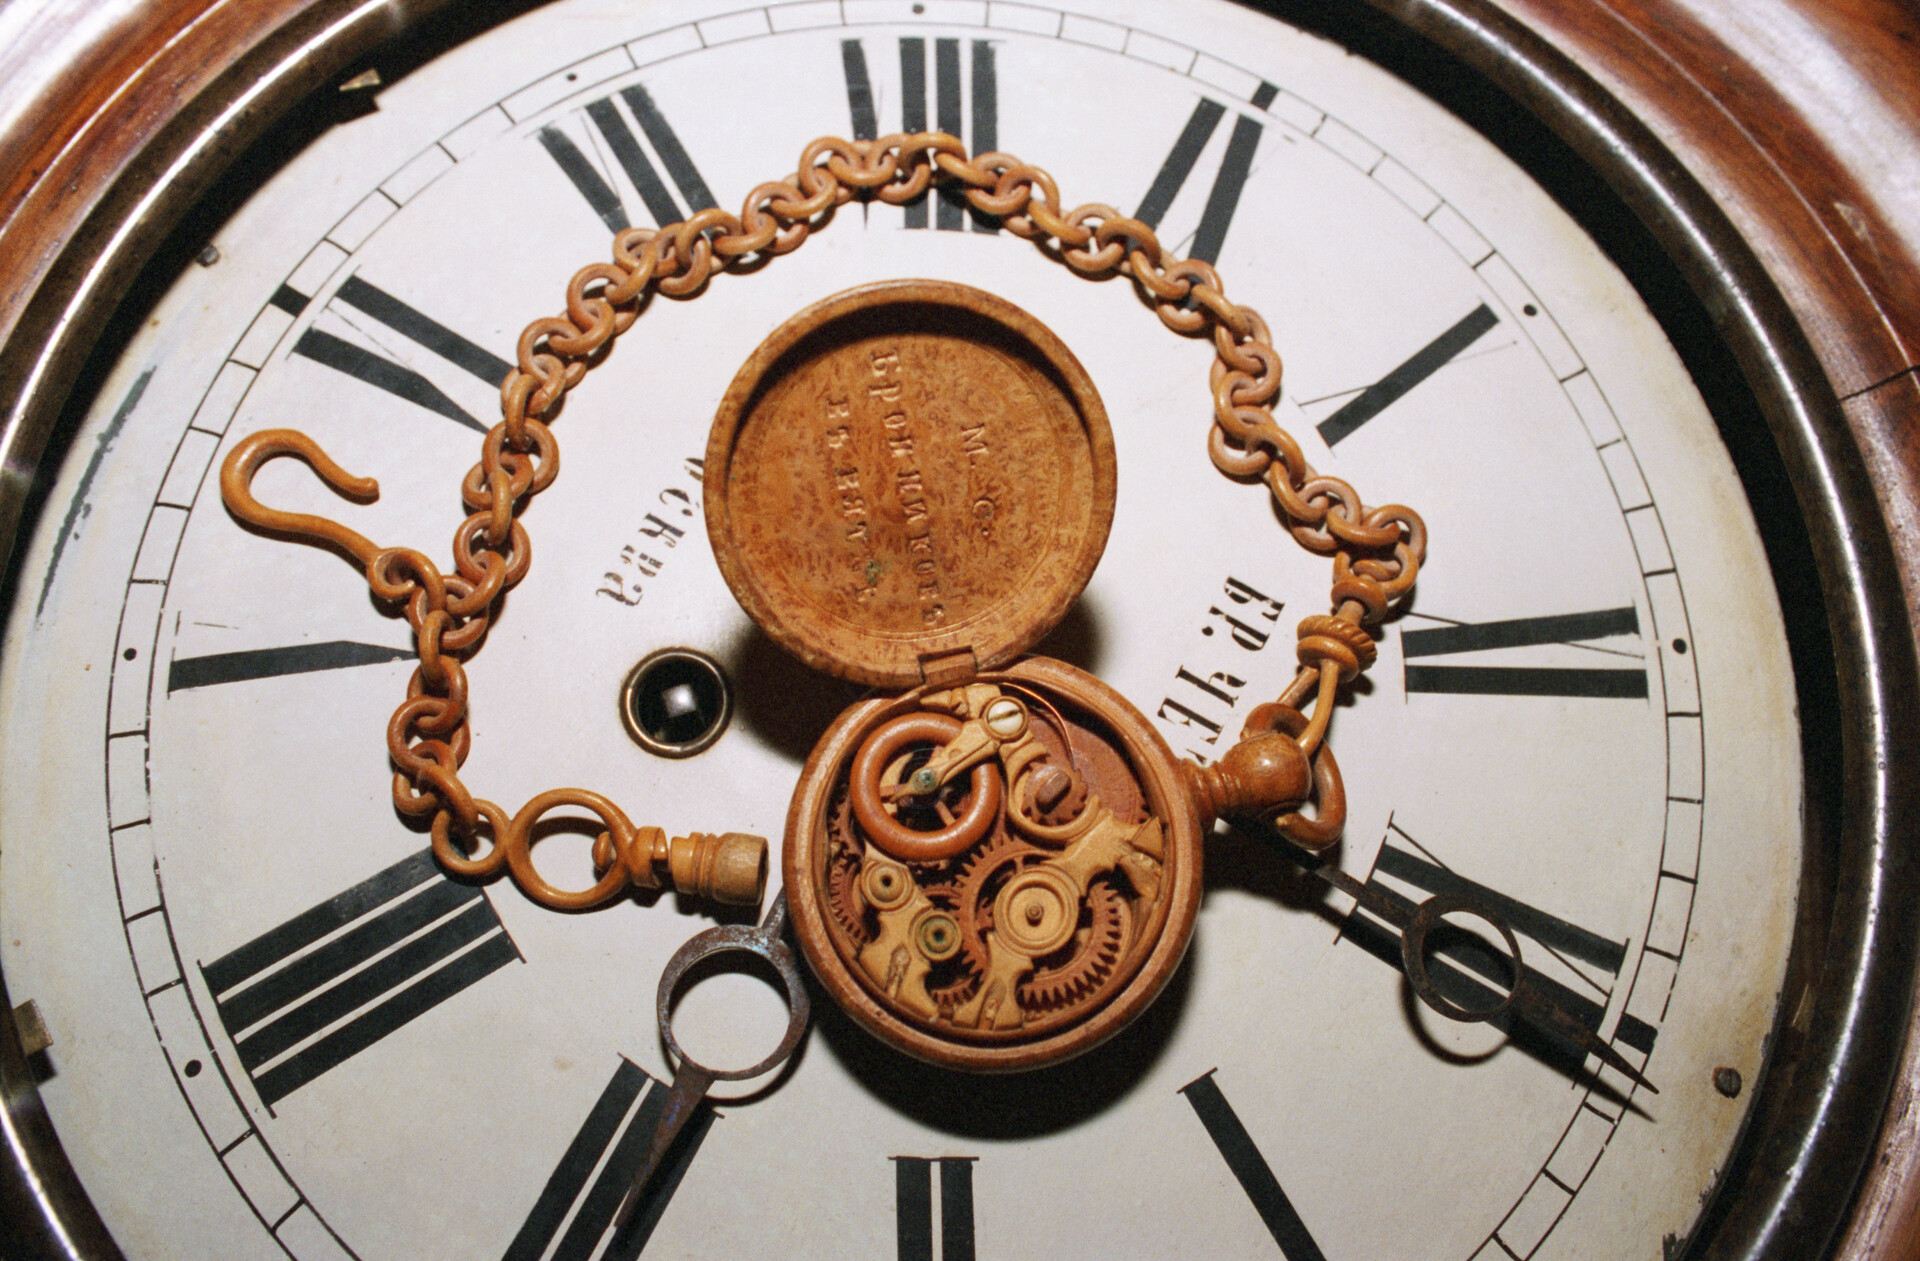 Дрвени џепни сат који је у 19. веку направио мајстор Семјон Броњиков и који је још увек у исправном стању. Експонат Историјског и завичајног музеја „Д.Г. Бурилин“ у Иванову.